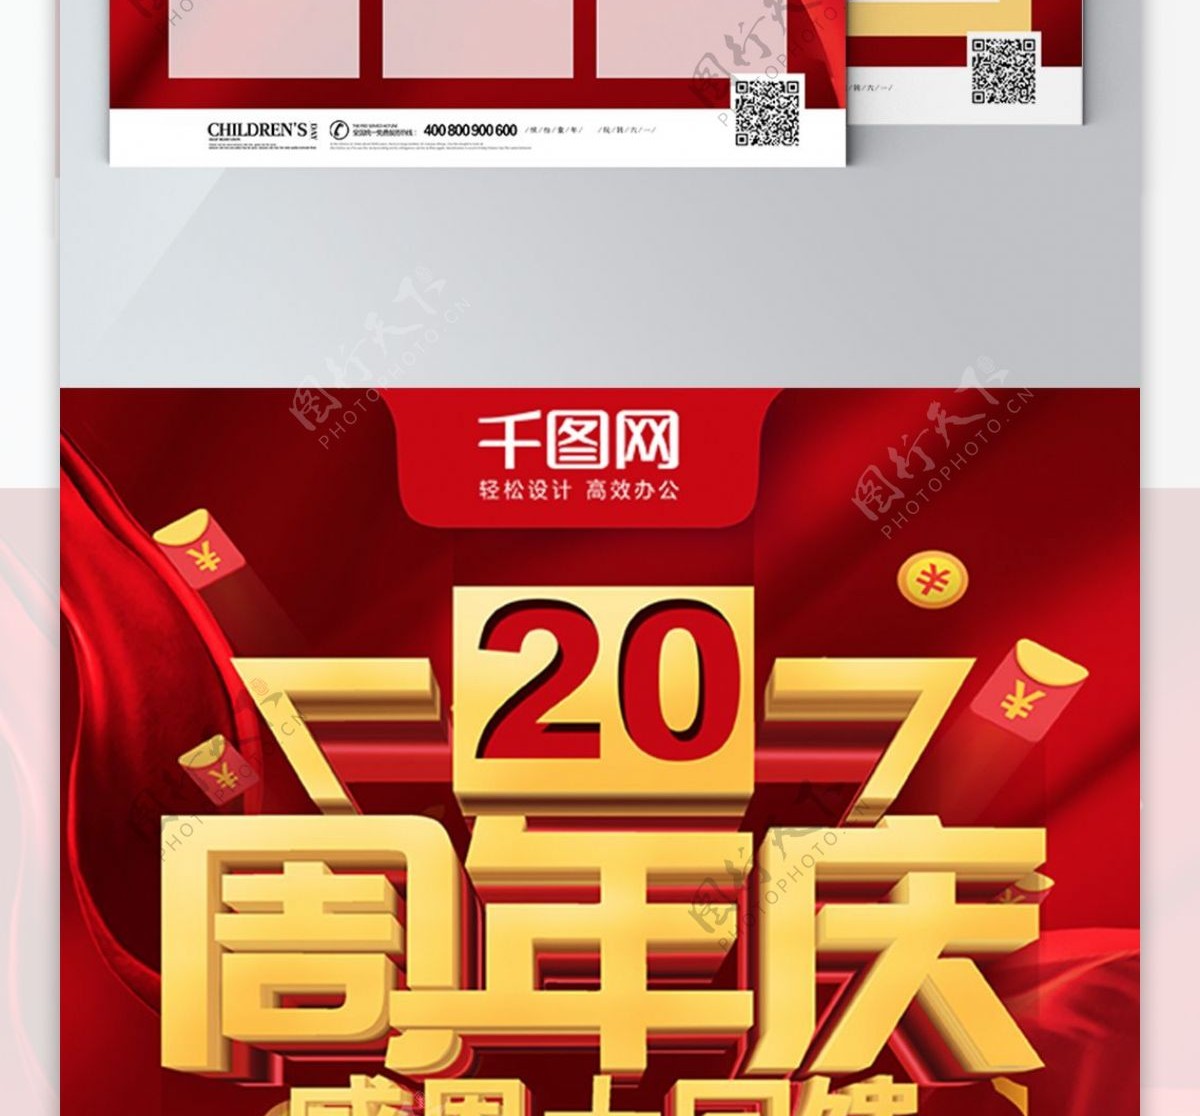 红色喜庆感恩周年庆超市周年庆典宣传单页